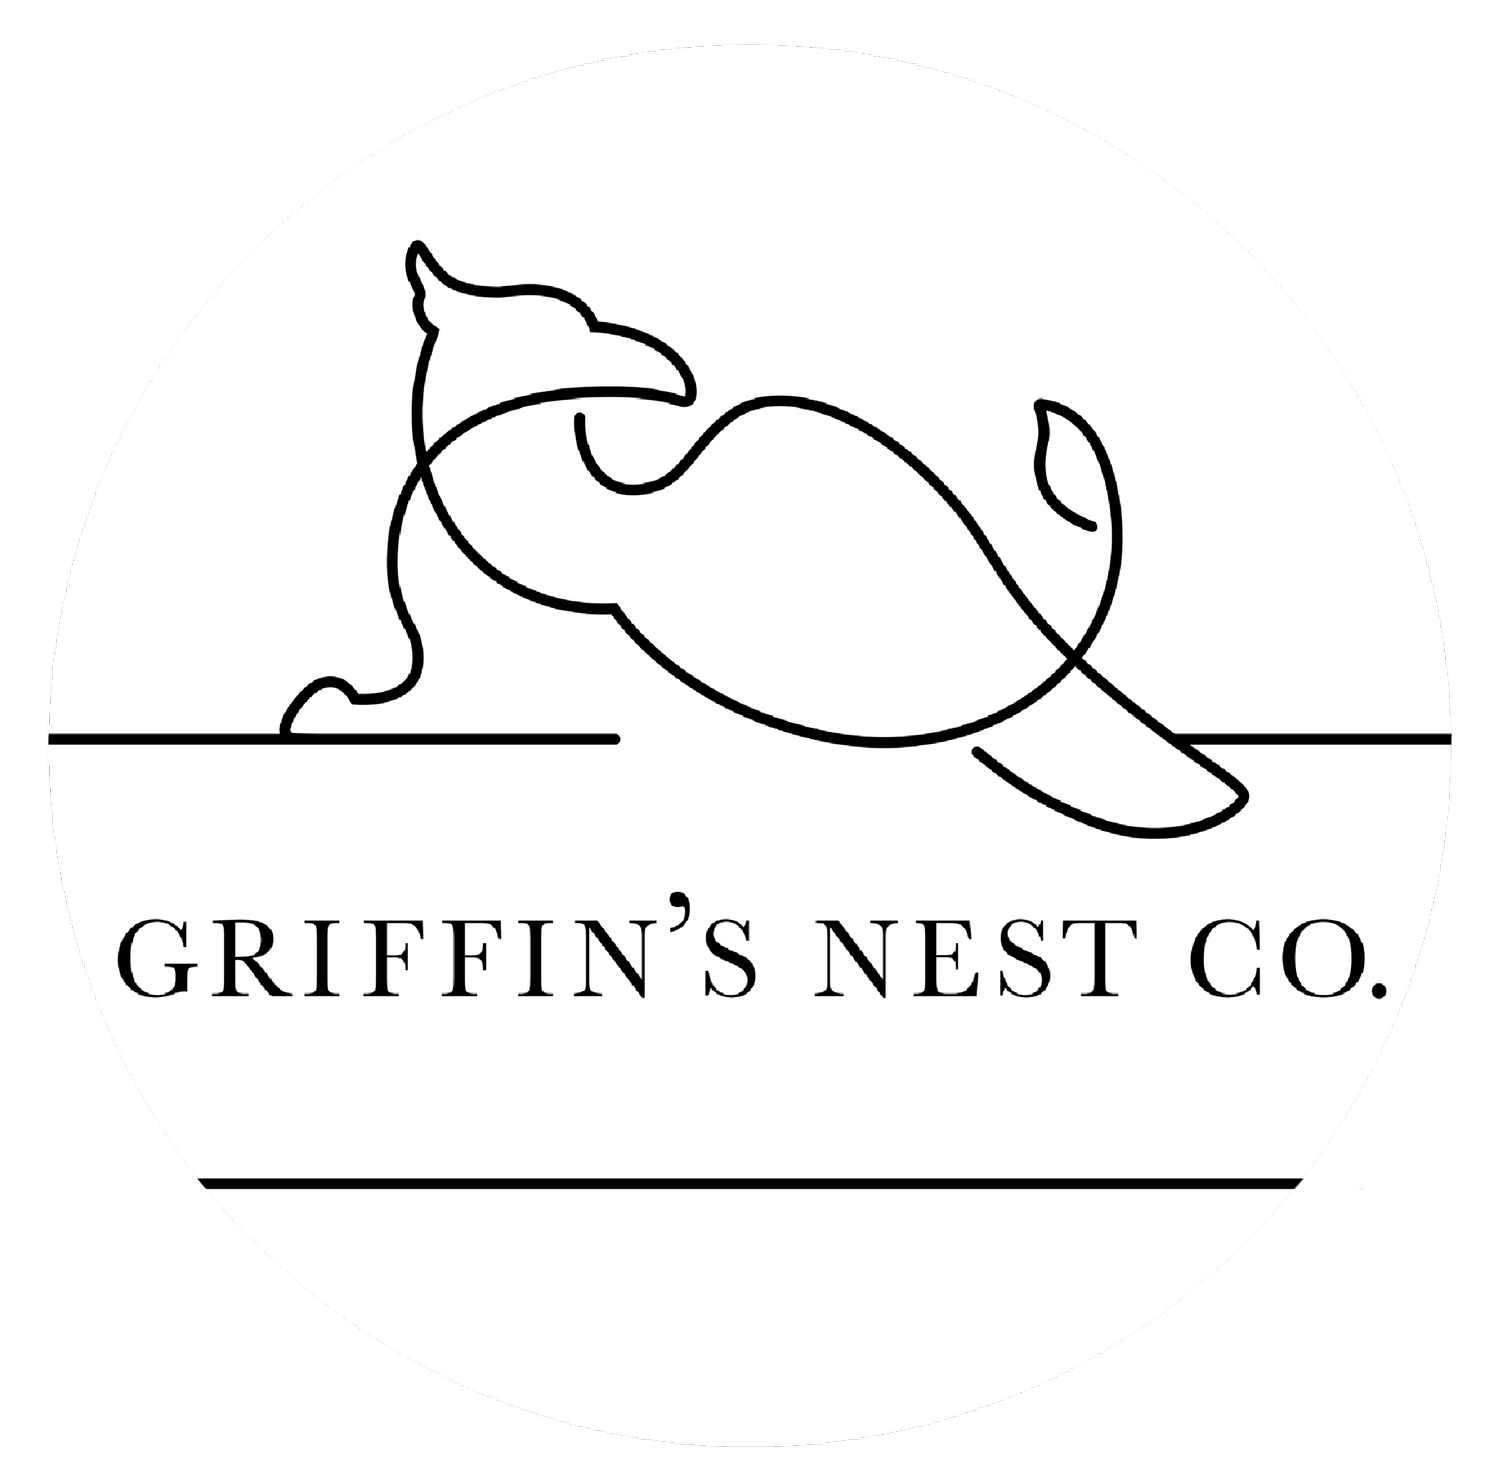 Griffins Nest Co